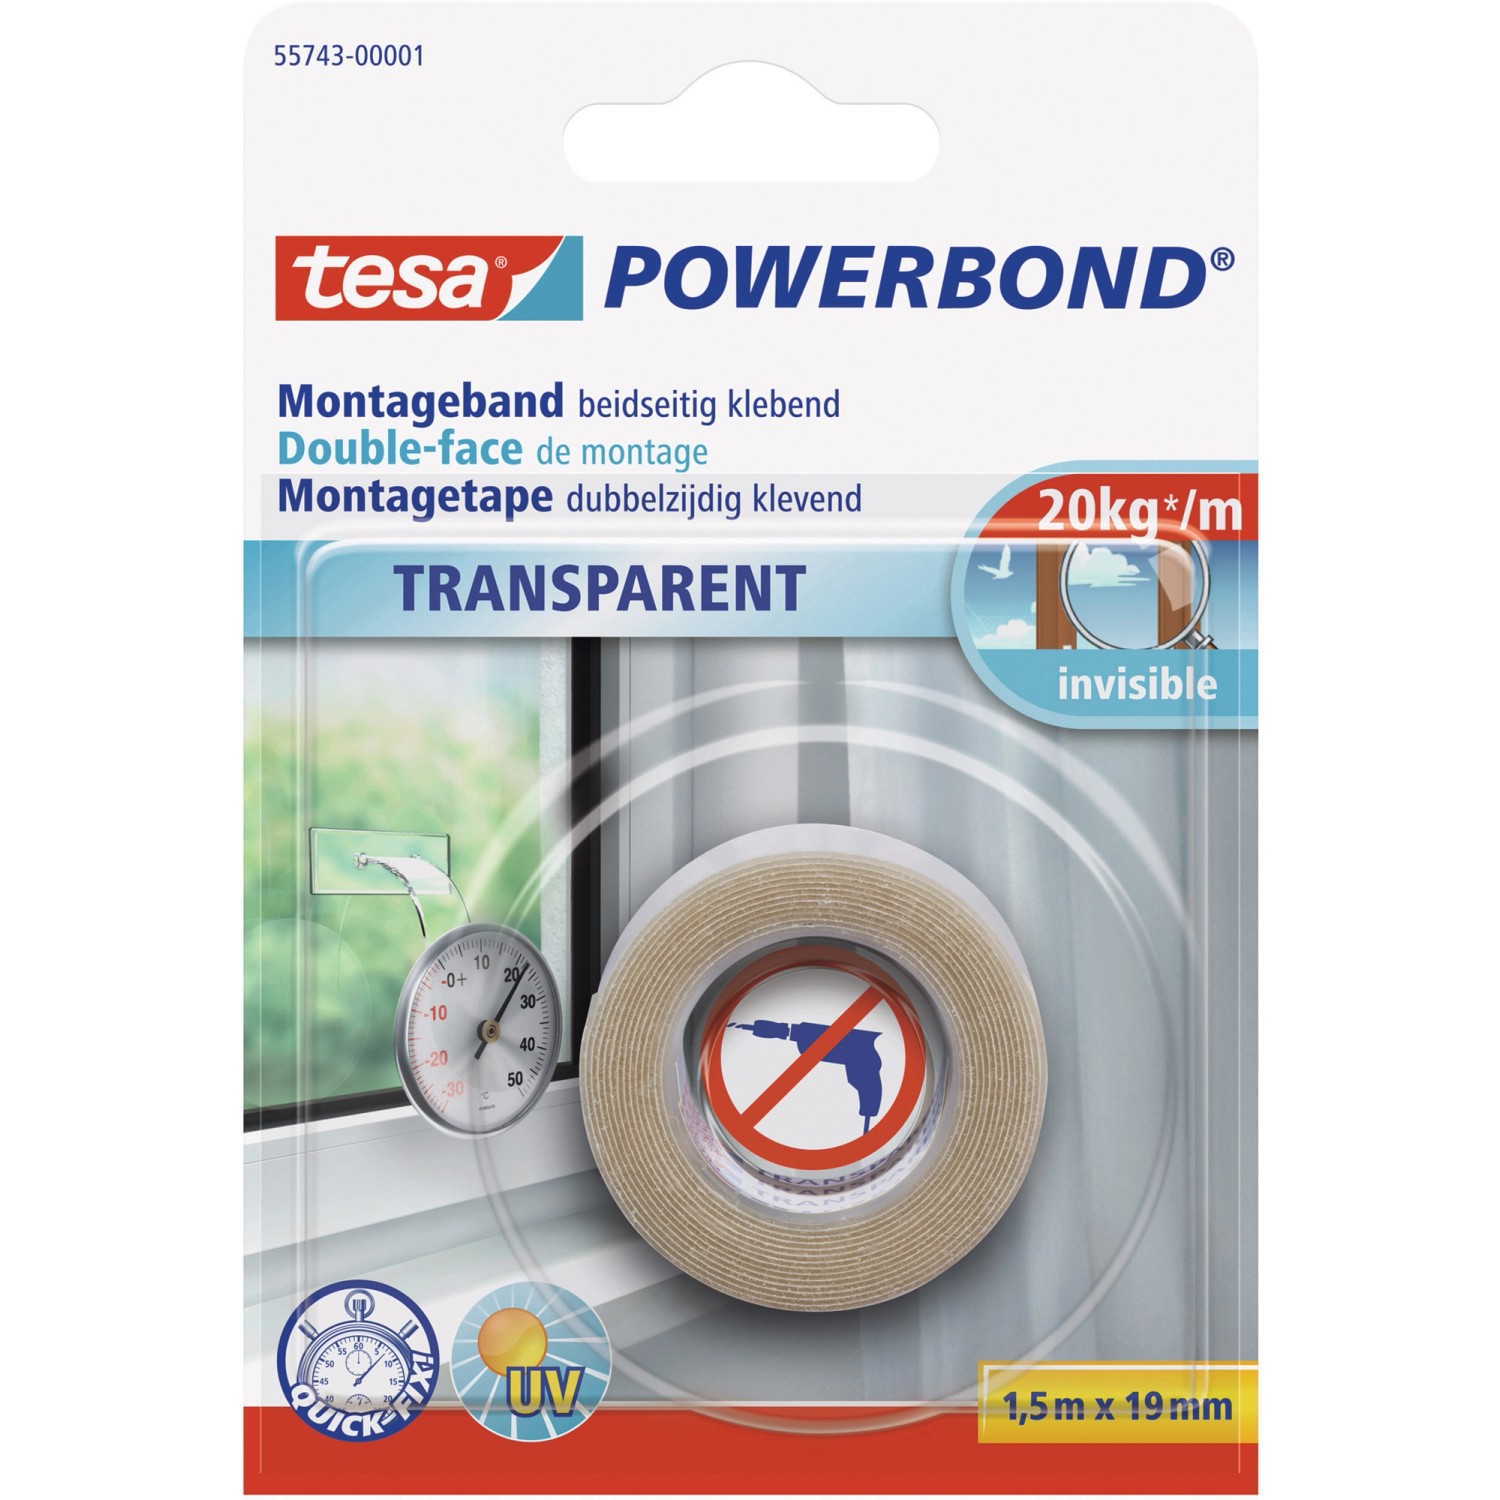 Tesa Powerbond Montageband Transparent 1,5 m x 19 mm